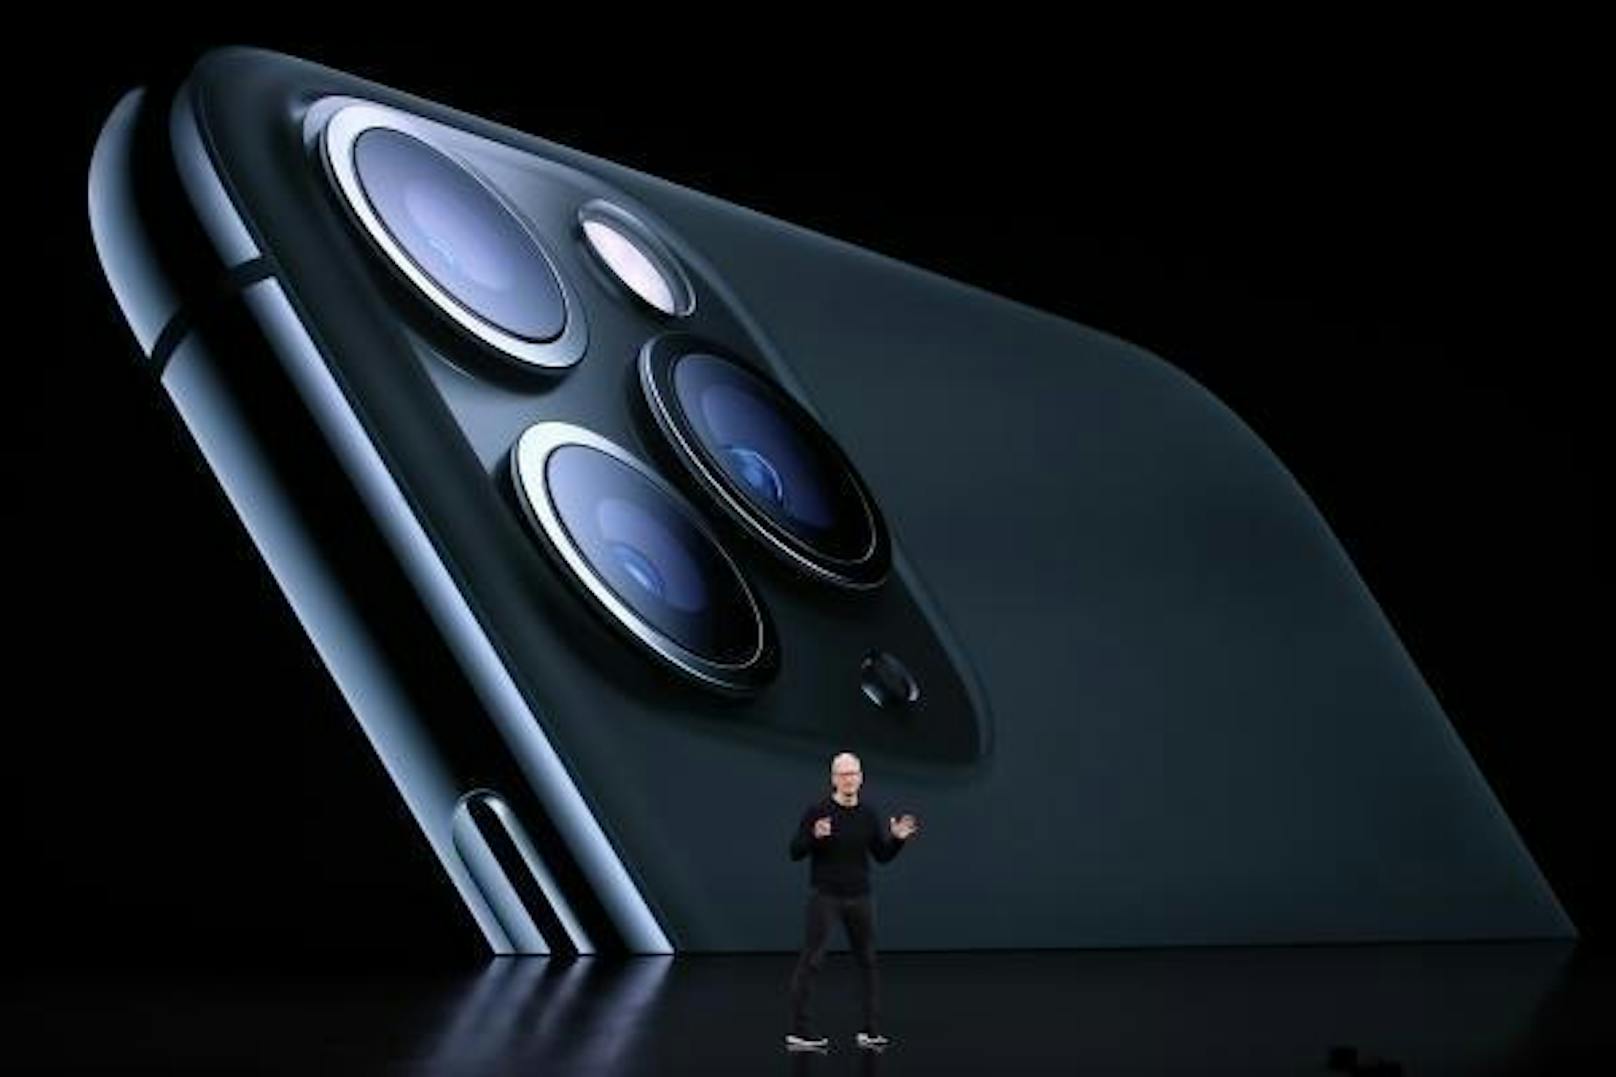 "Apple spürt den Druck von anderen Herstellern und deren Handykameras deutlich. Die Kamera des iPhone 11 Pro ist darum ein großer Schritt nach vorn", schreibt Theverge.com weiter im Testbericht.